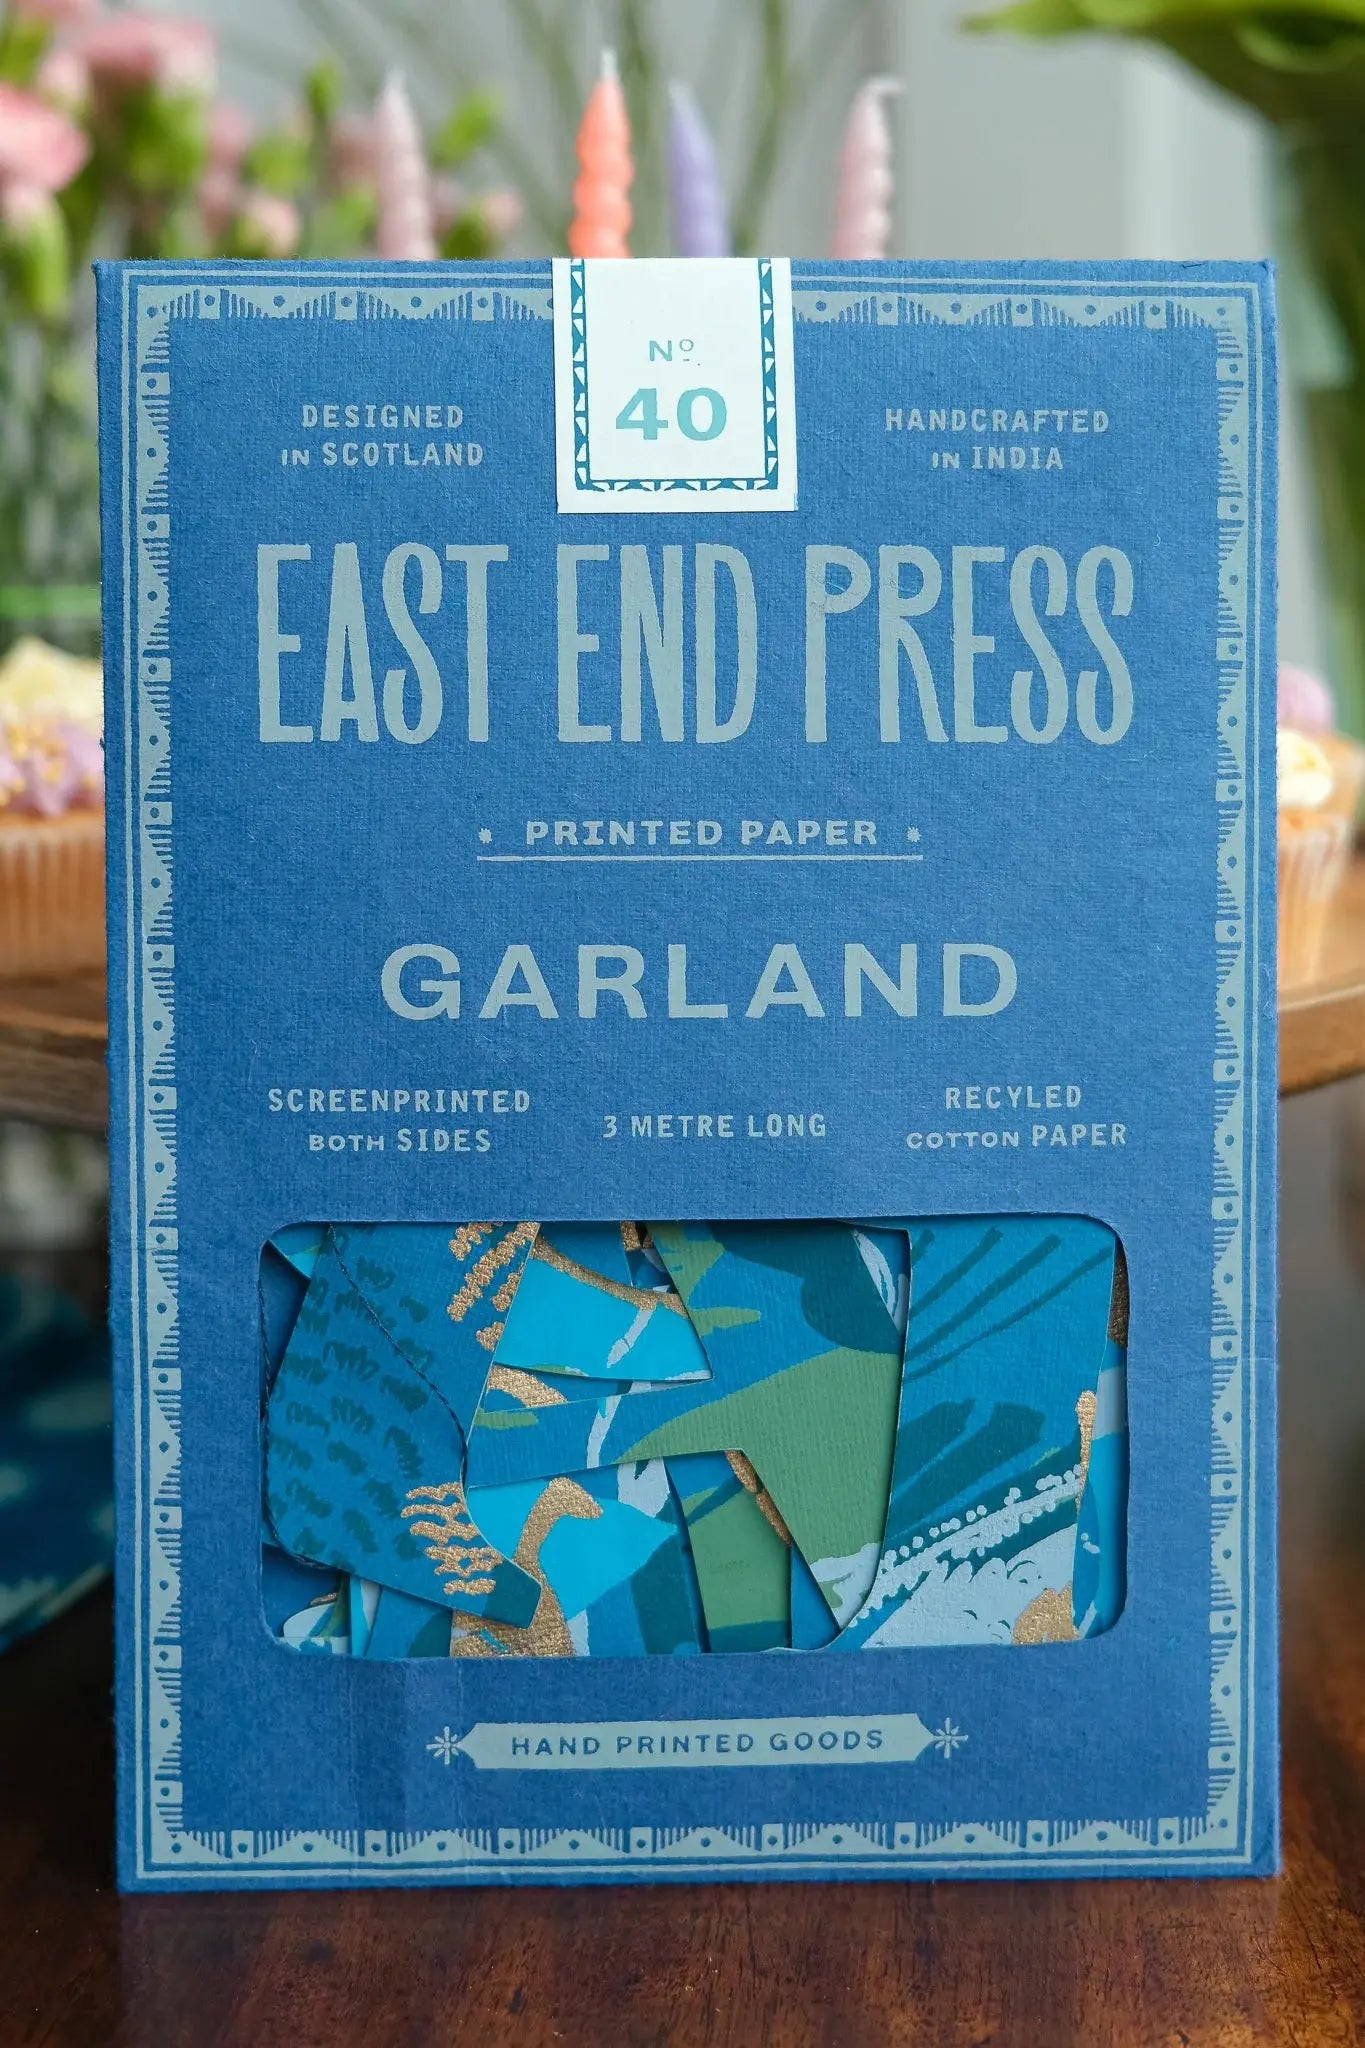 Happy Birthday Garland East End Press